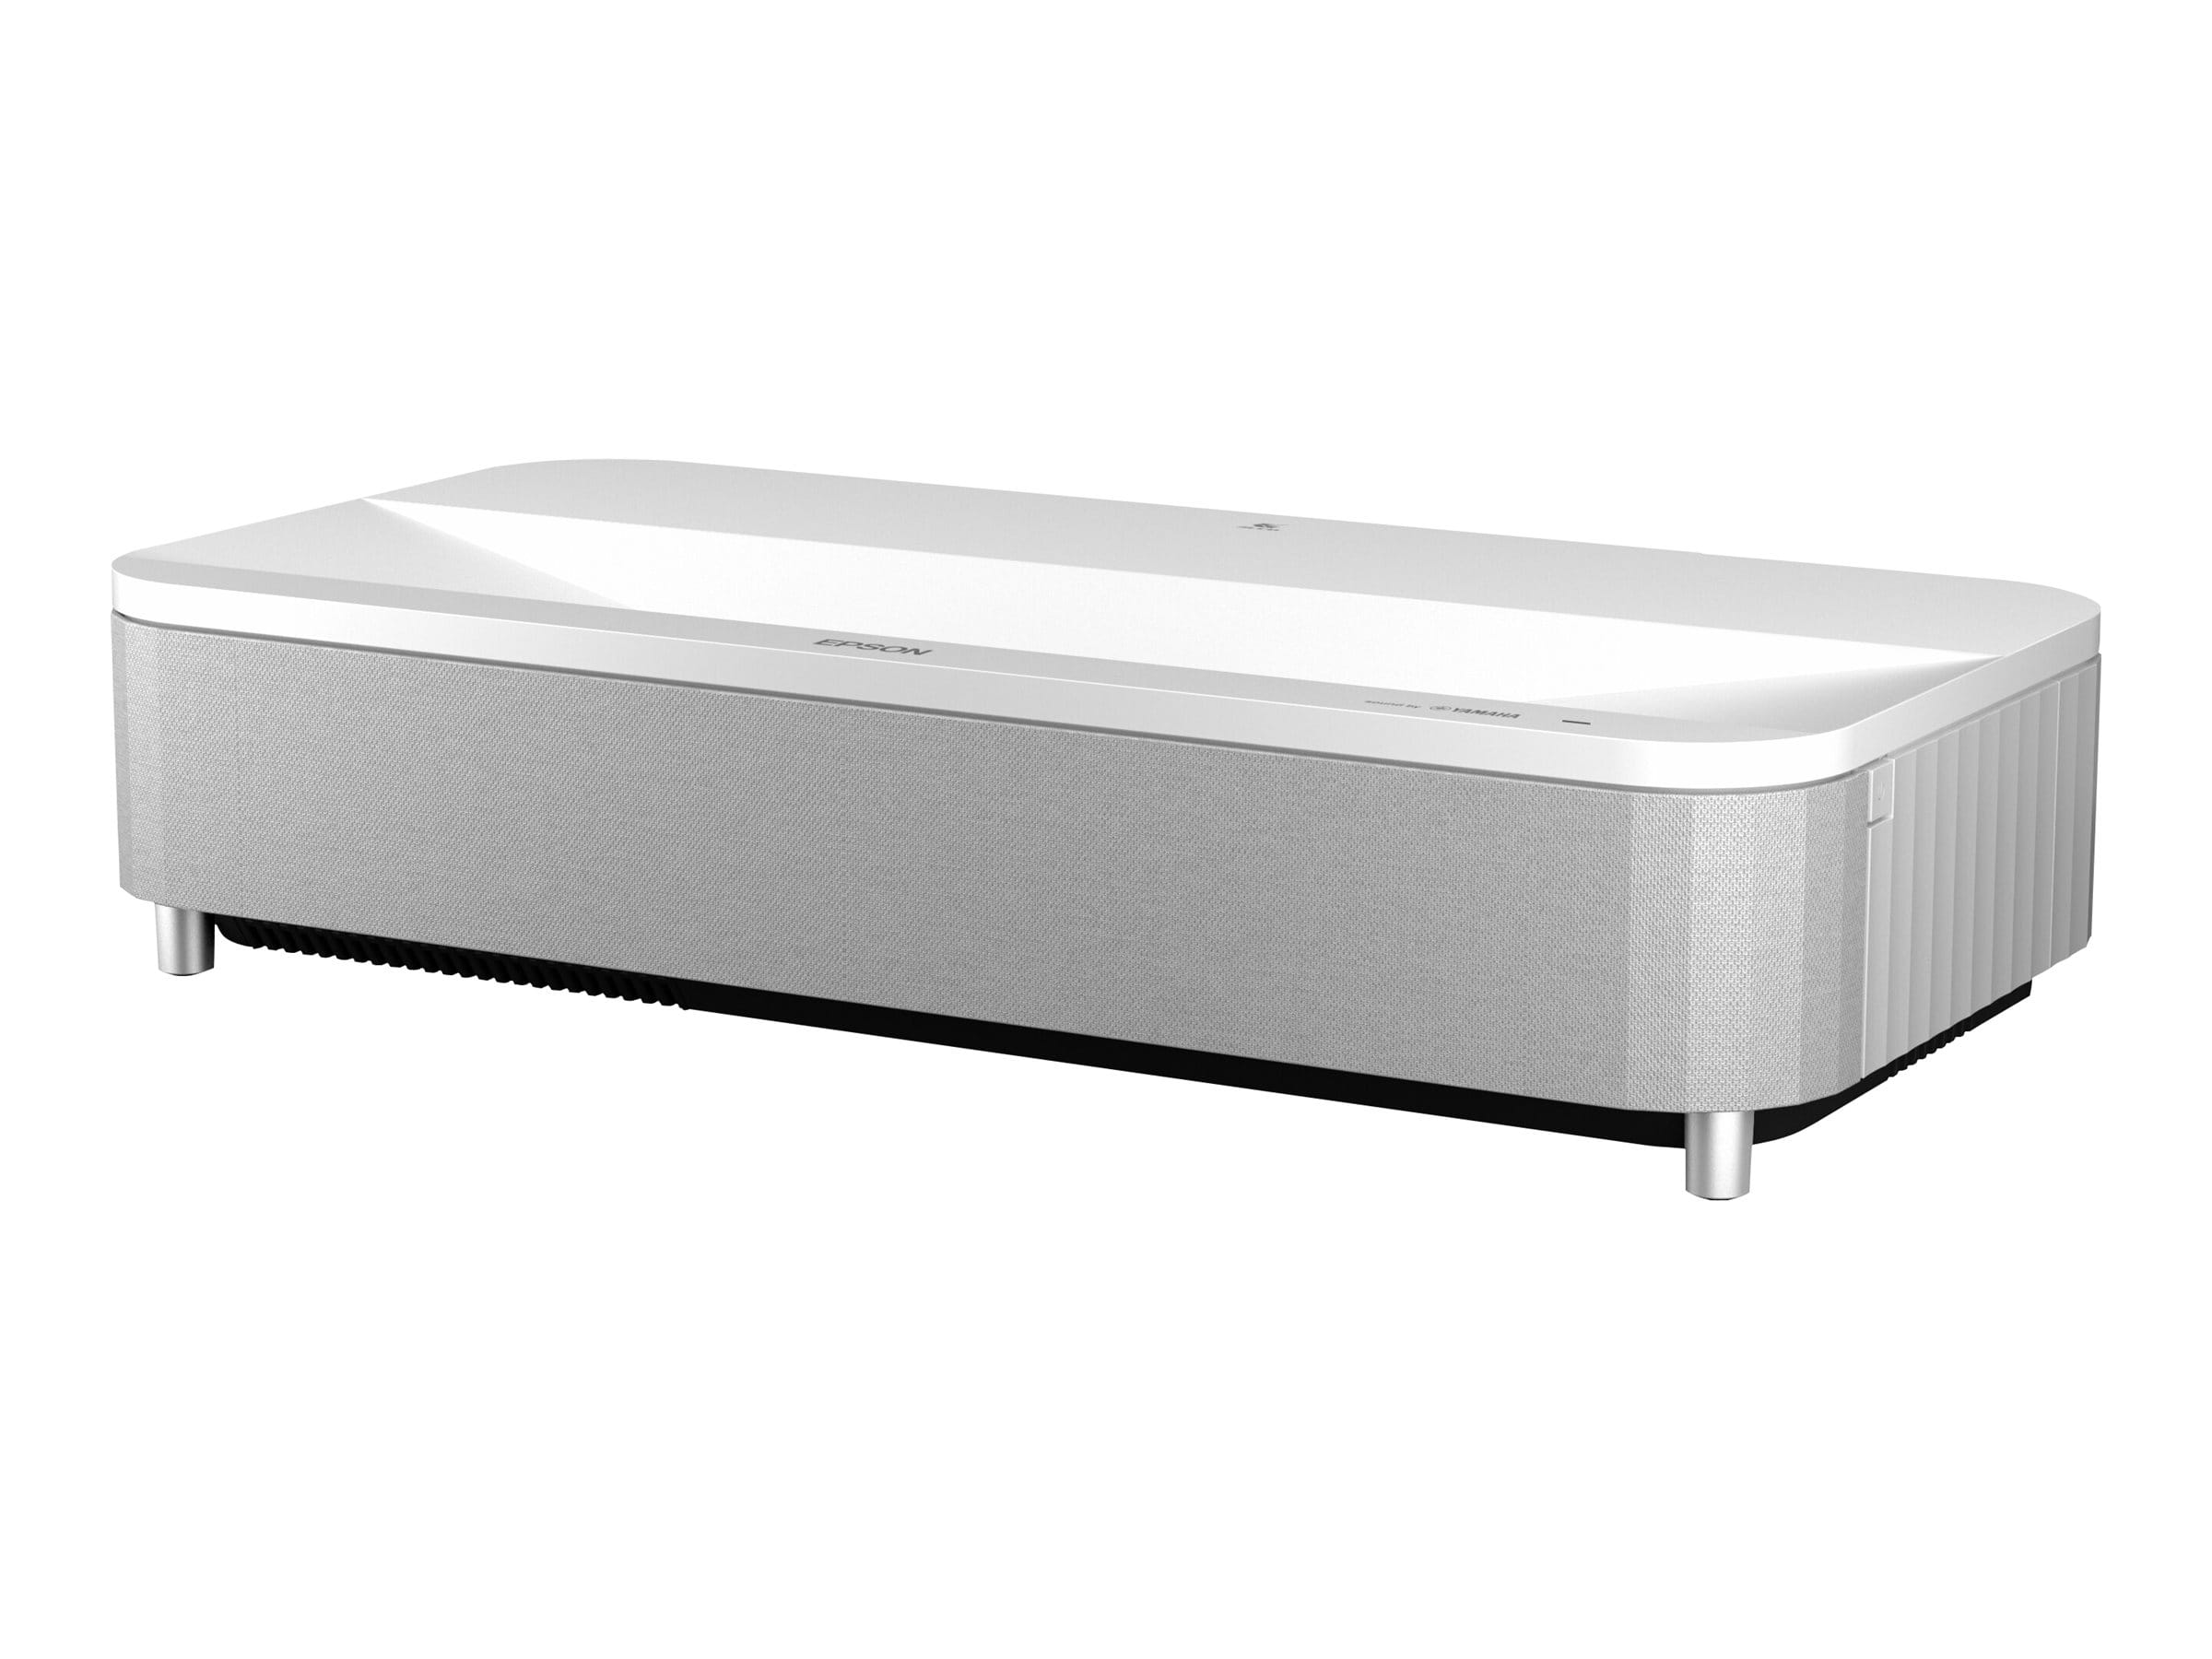 Epson EH-LS800W - 3-LCD-Projektor - 4000 lm (weiß)